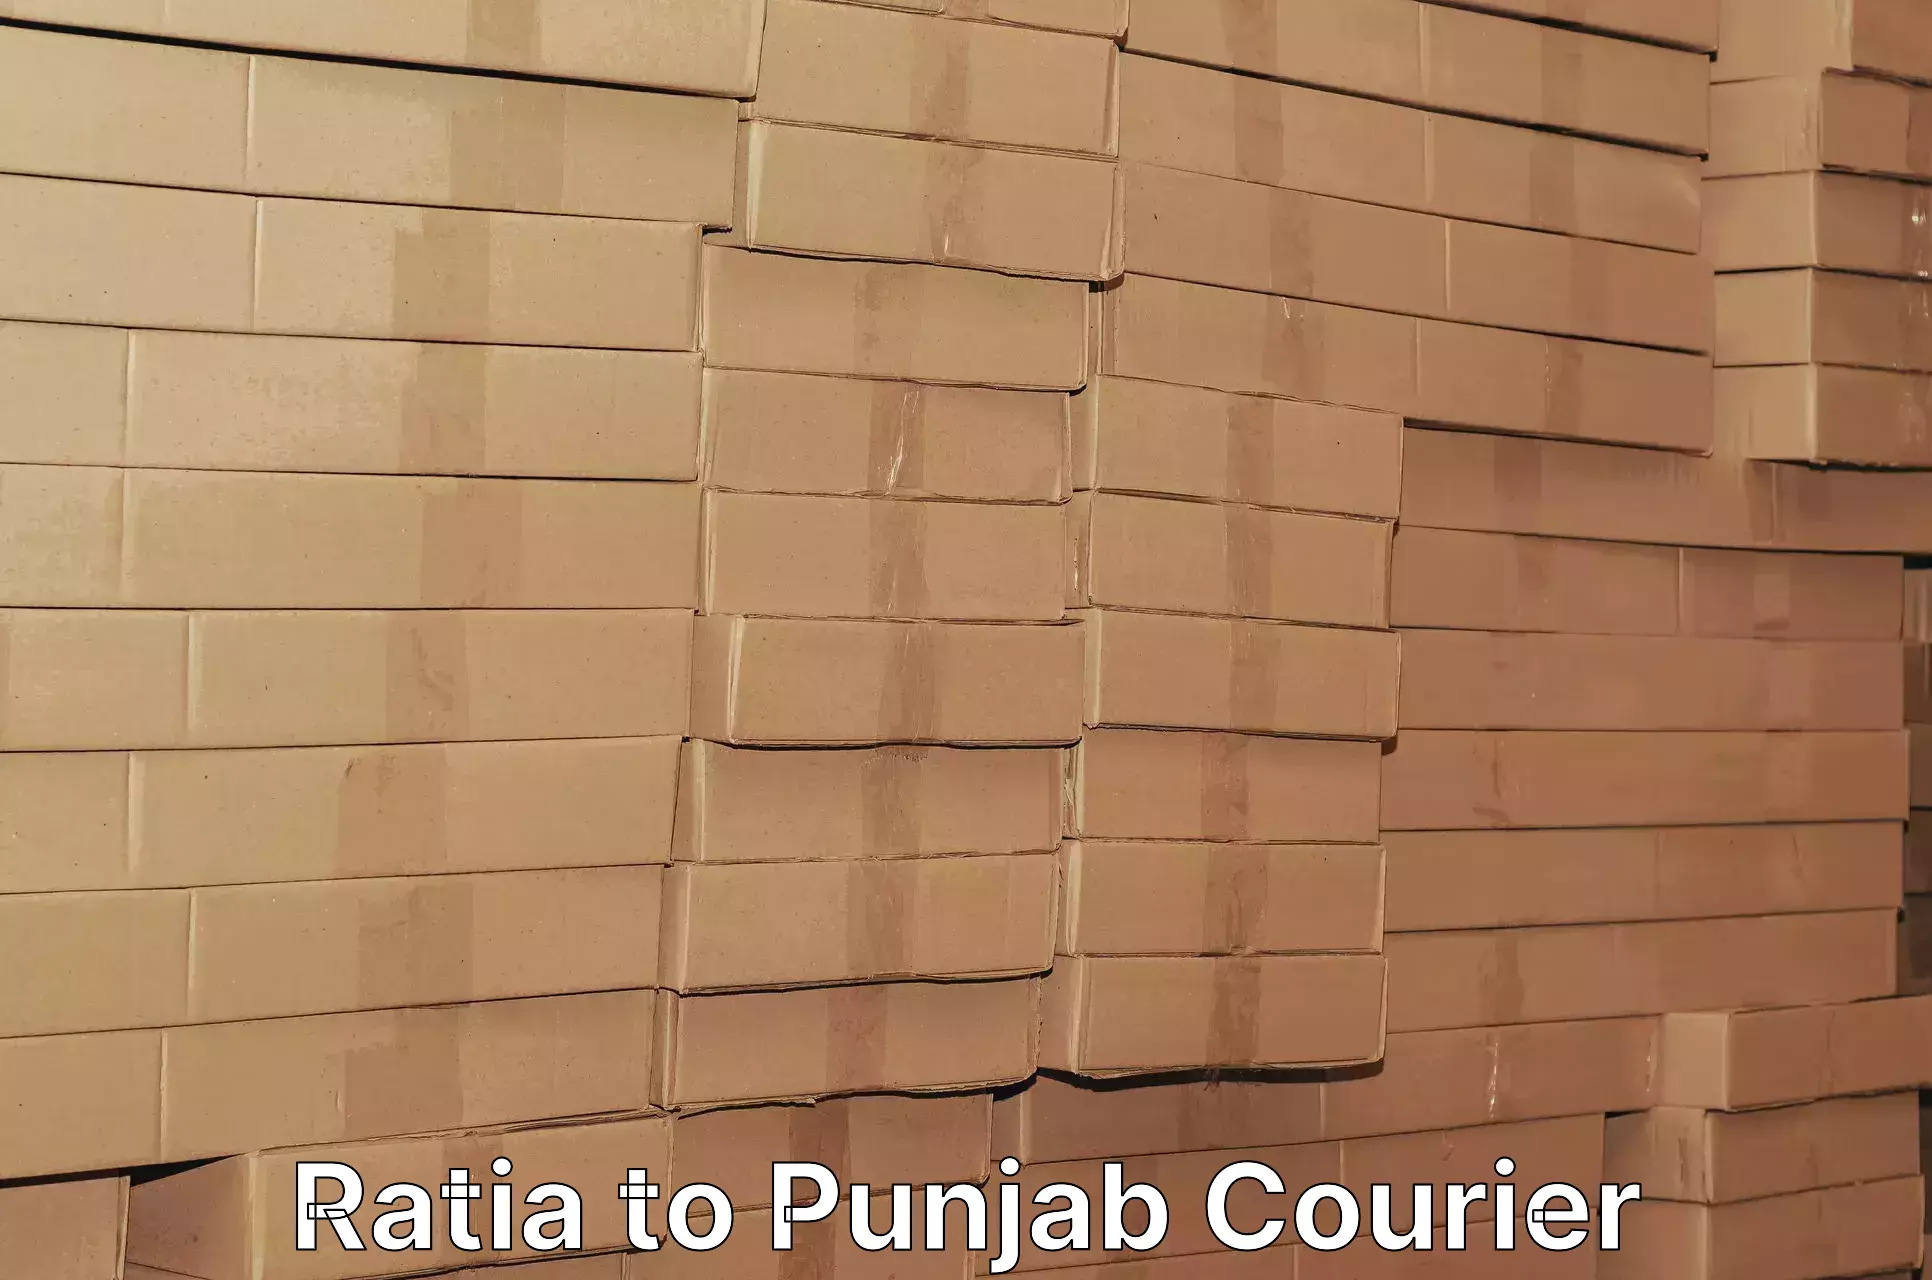 Courier app Ratia to Ajnala